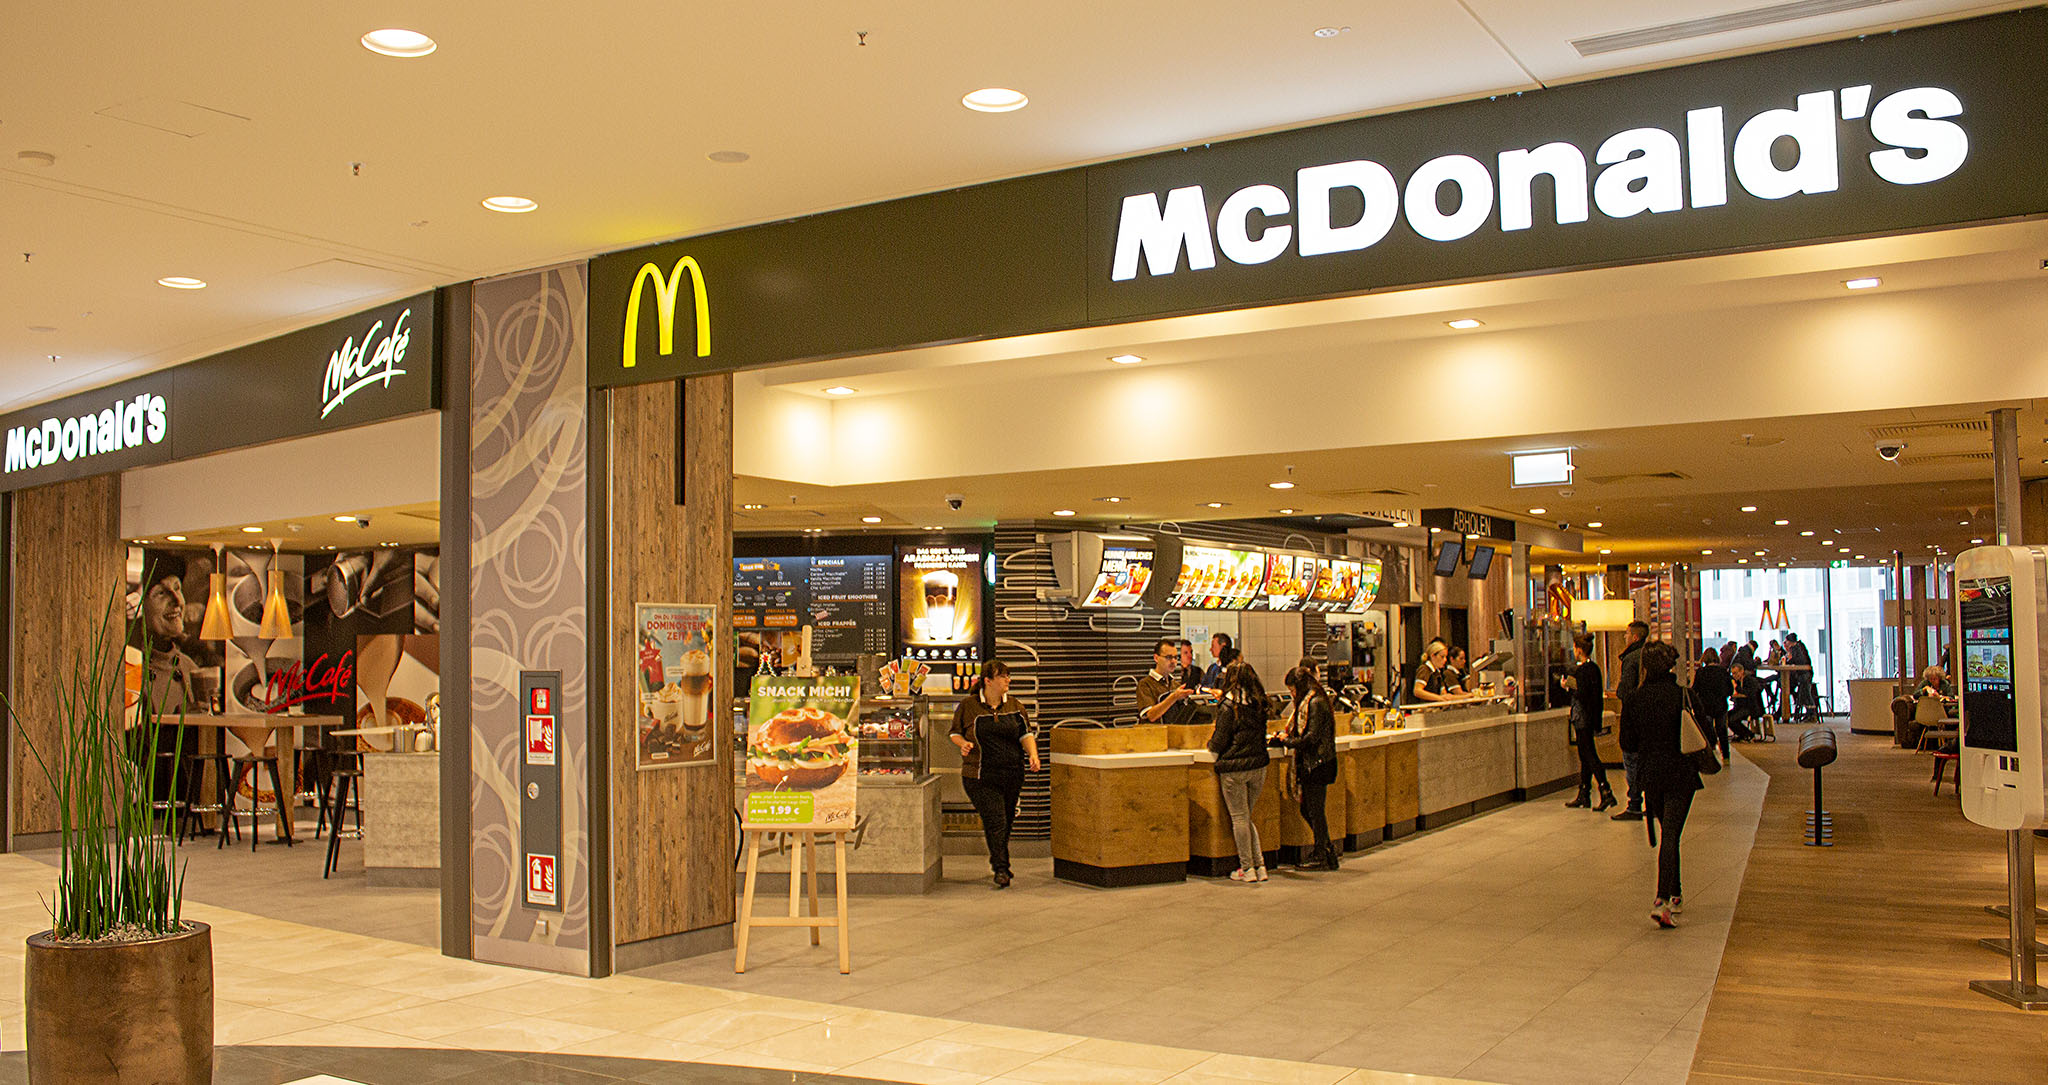 Das McDonald’s-Restaurant in Stuttgart (Mailänder Platz)